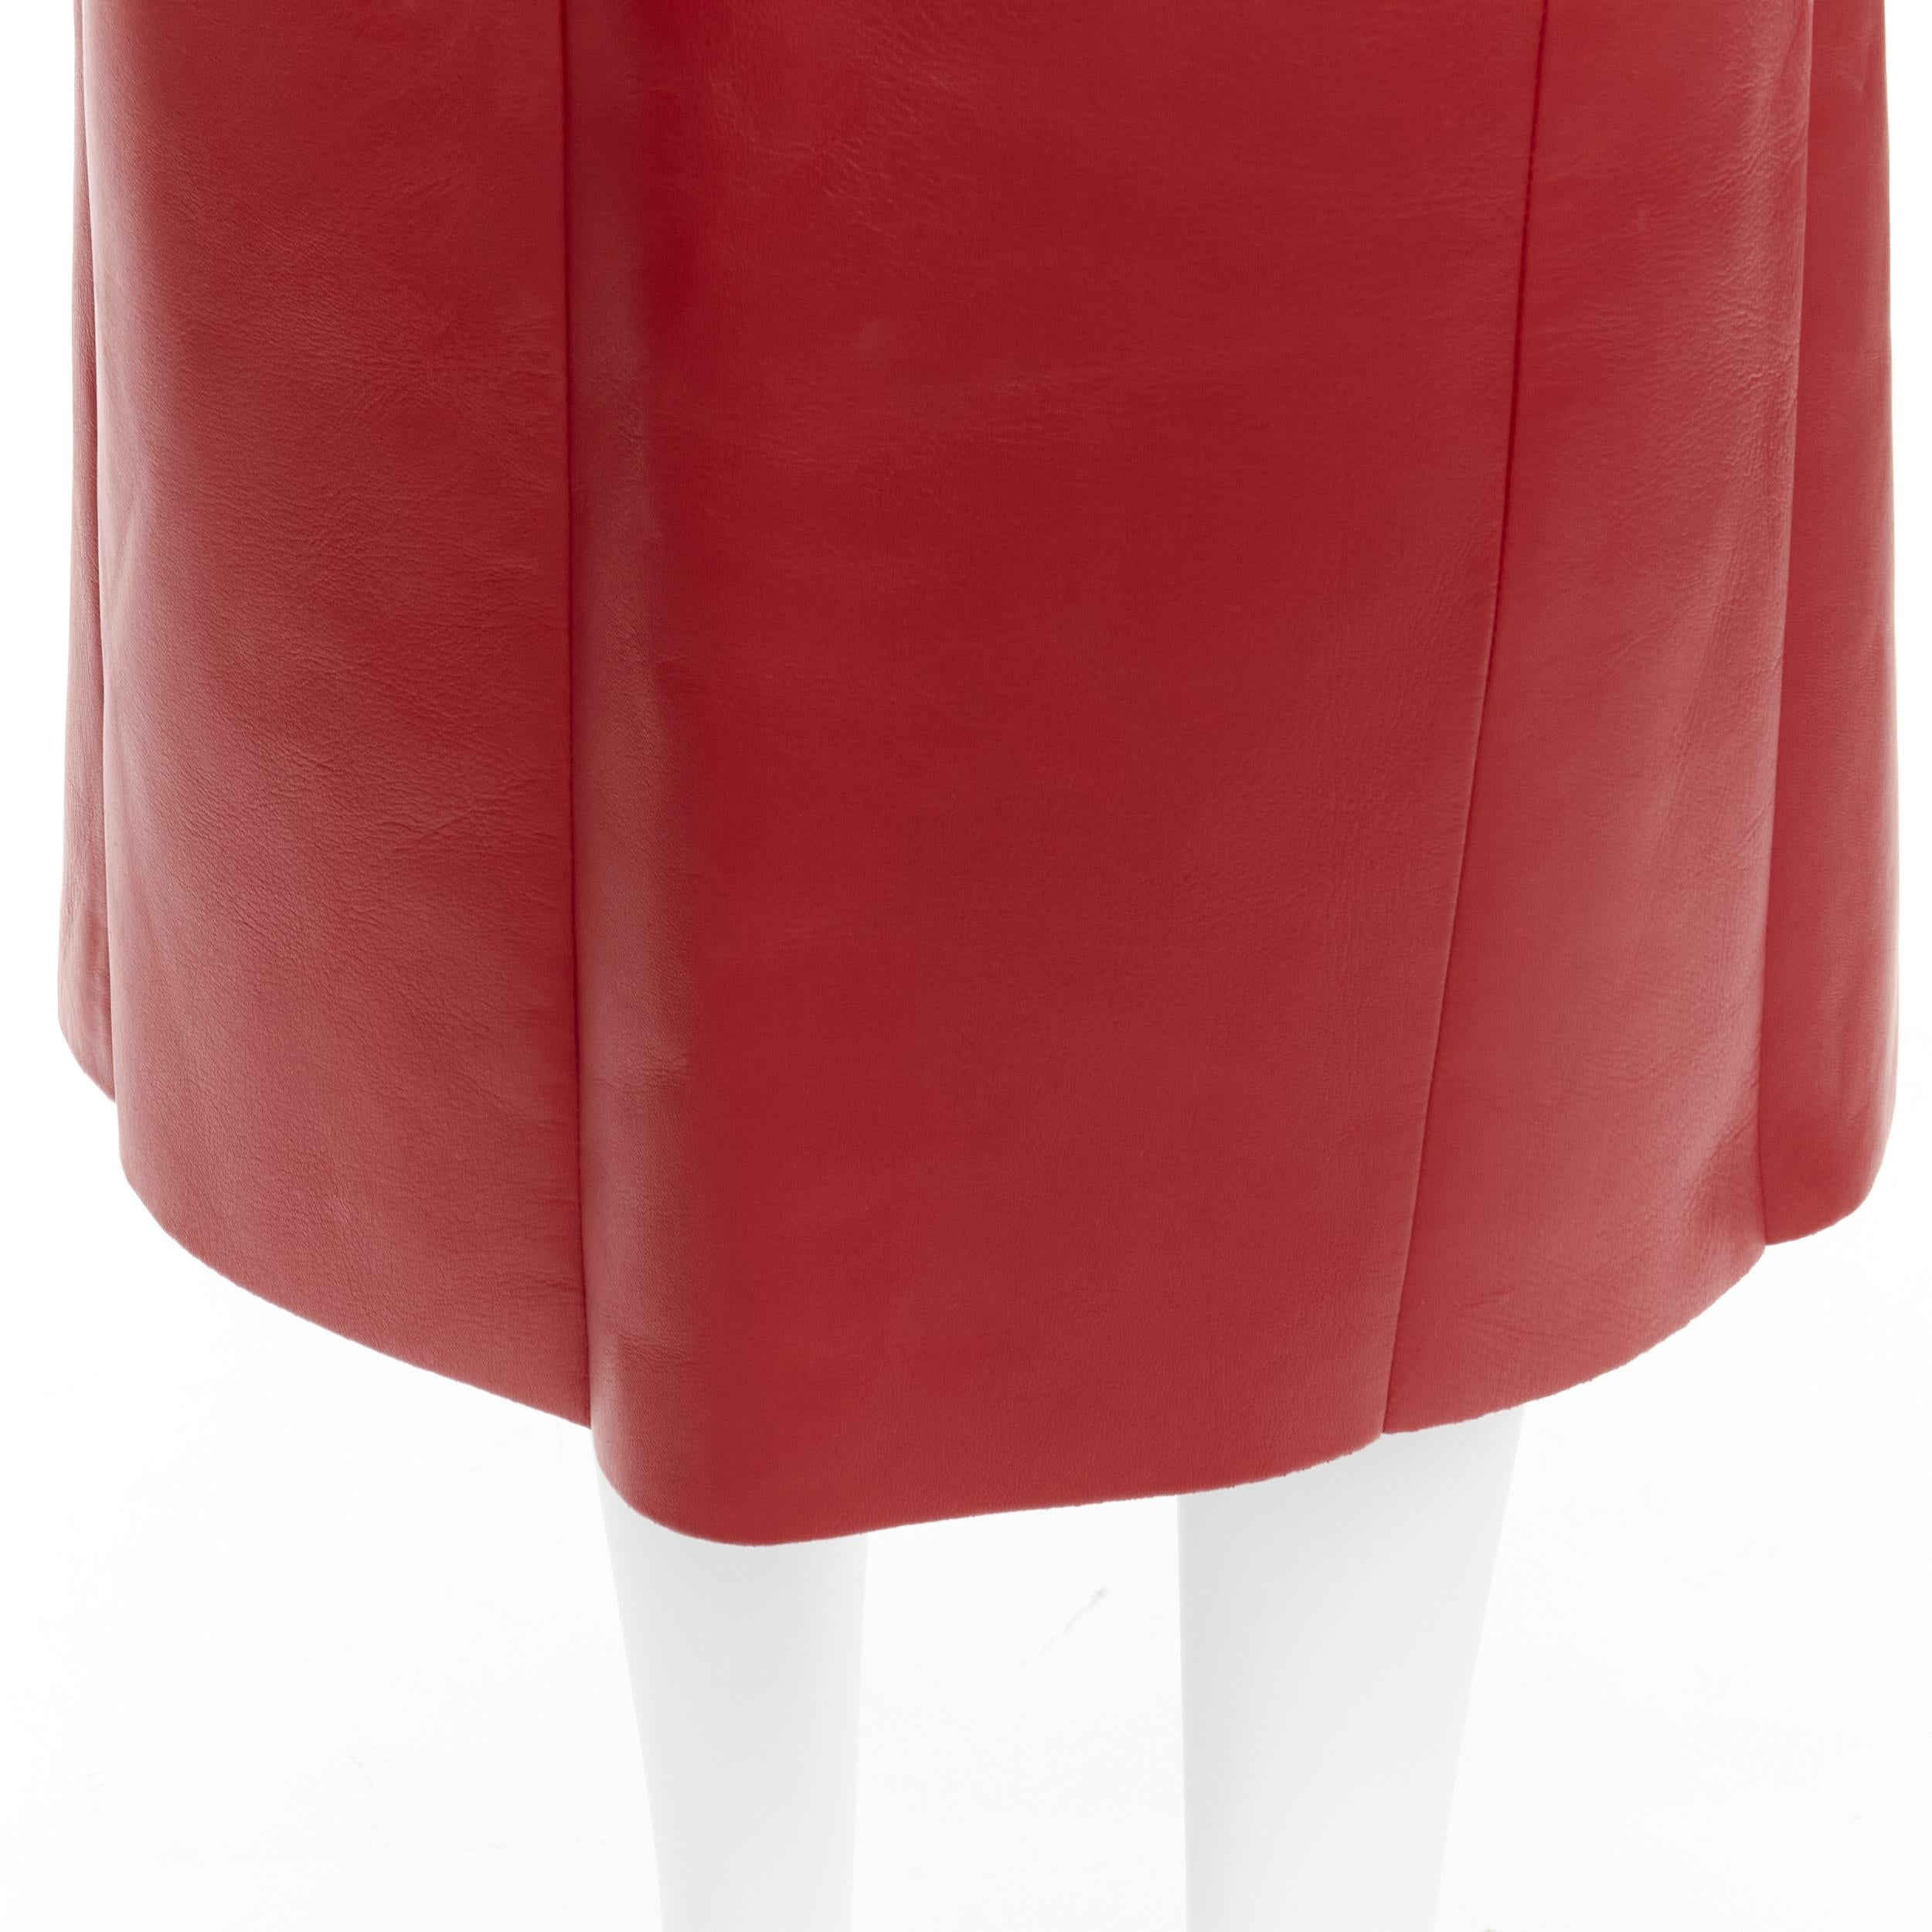 OLD CELINE Phoebe Philo red lambskin leather minimal panelled midi skirt FR36 S 2